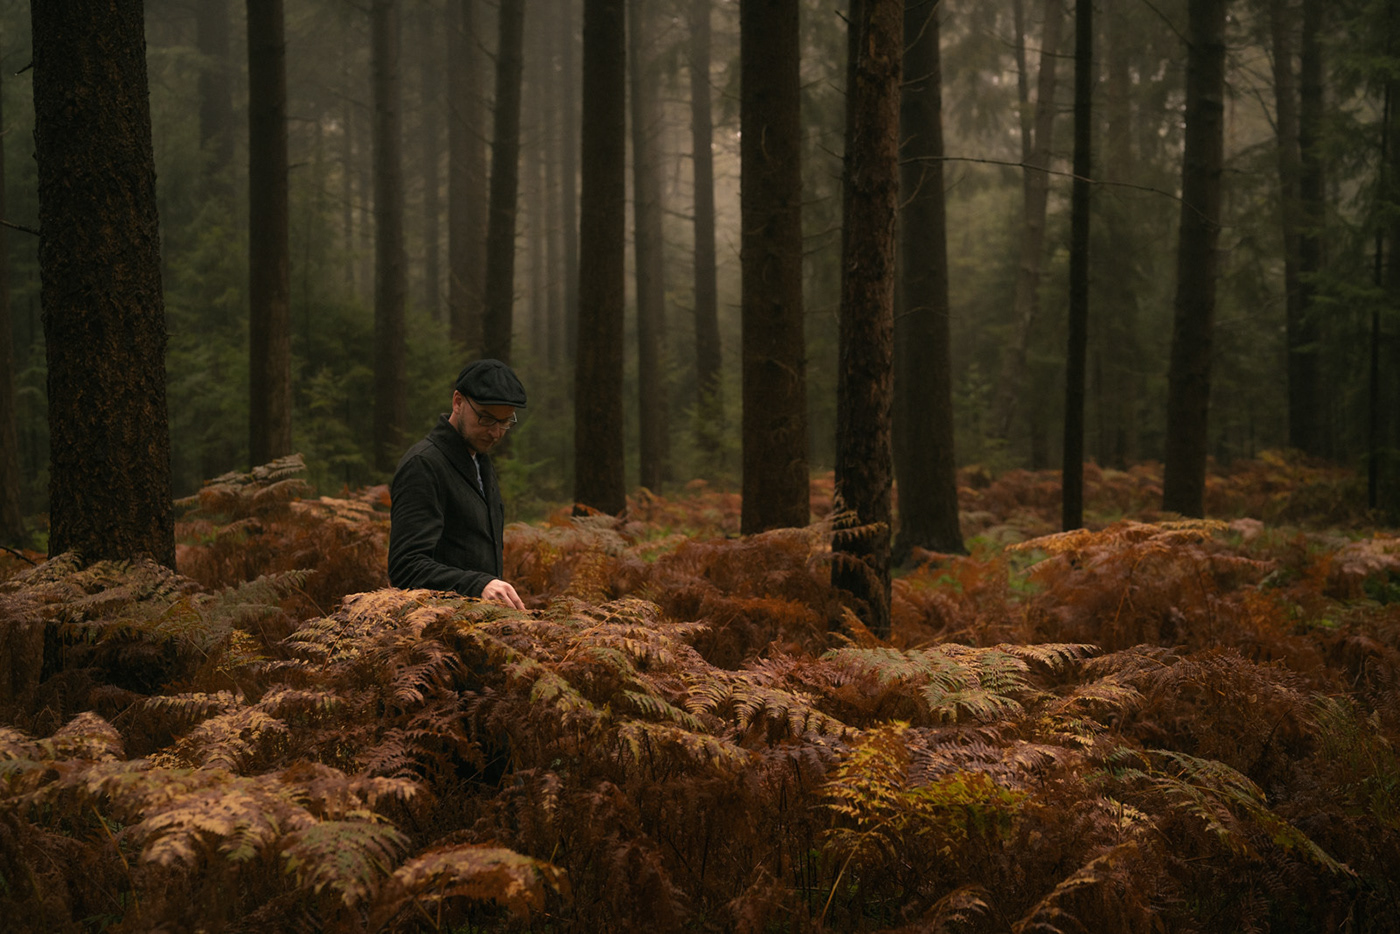 autumn forest self portrait portrait Landscape landscape photography trees Photography  cinematography cinematic